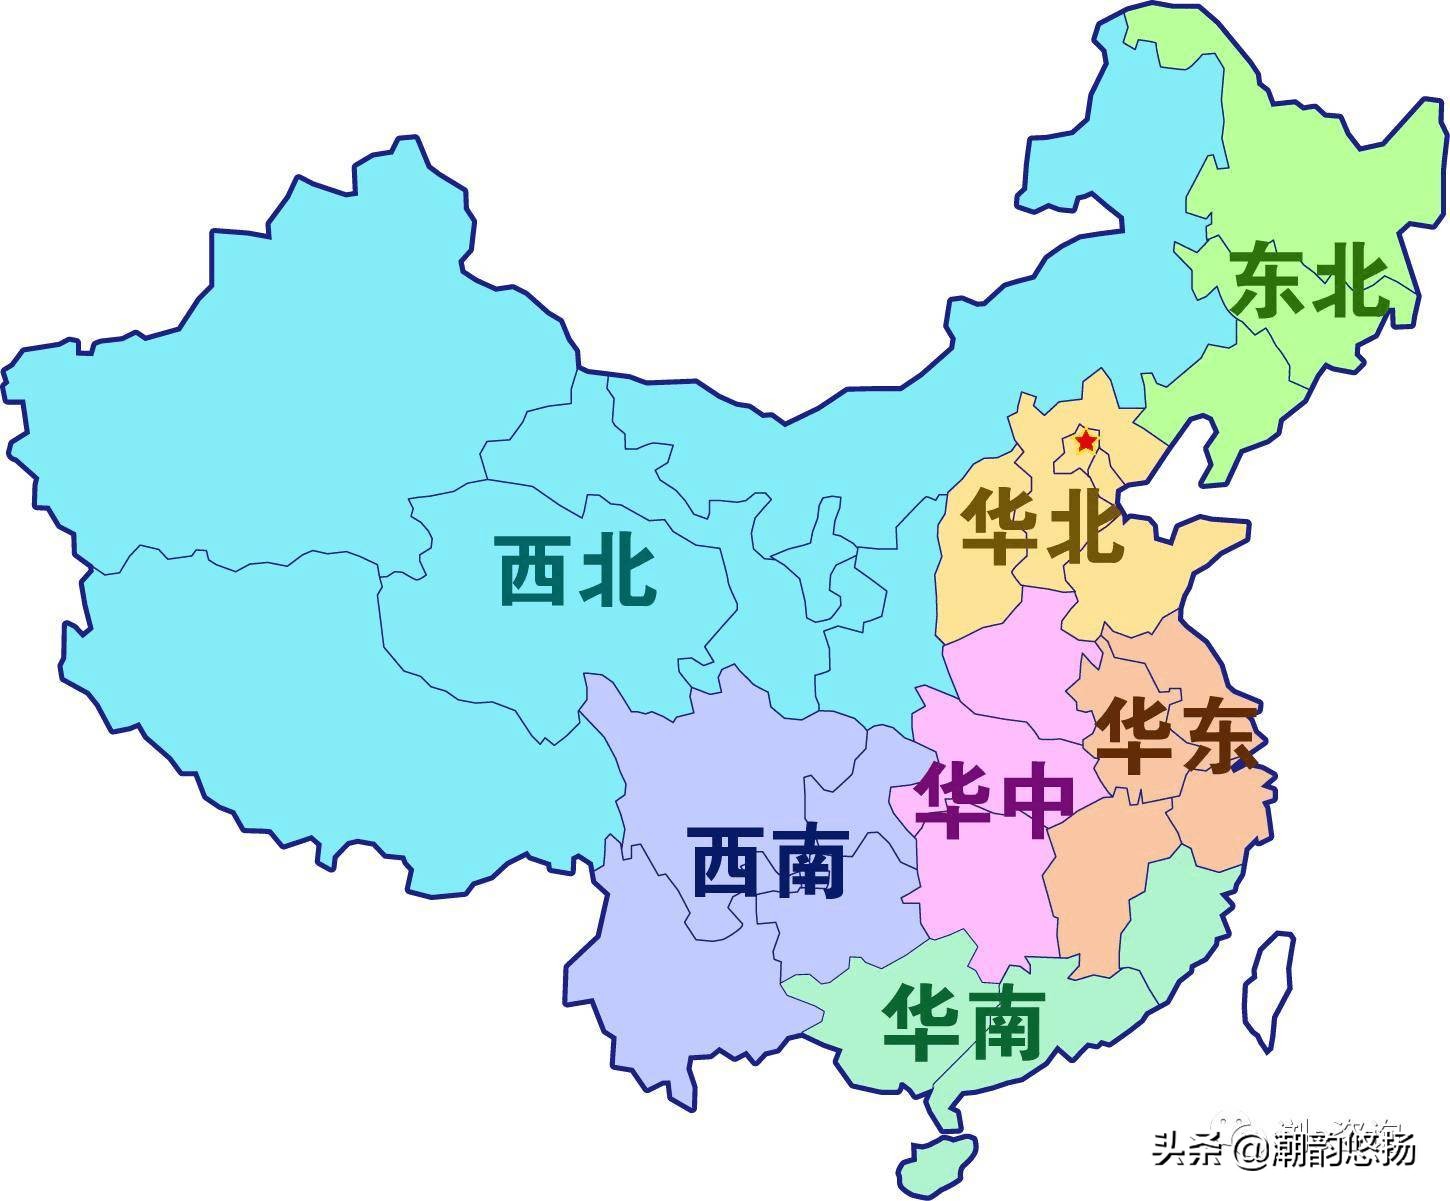 中国行政区域划分 中国34省轮廓图简图